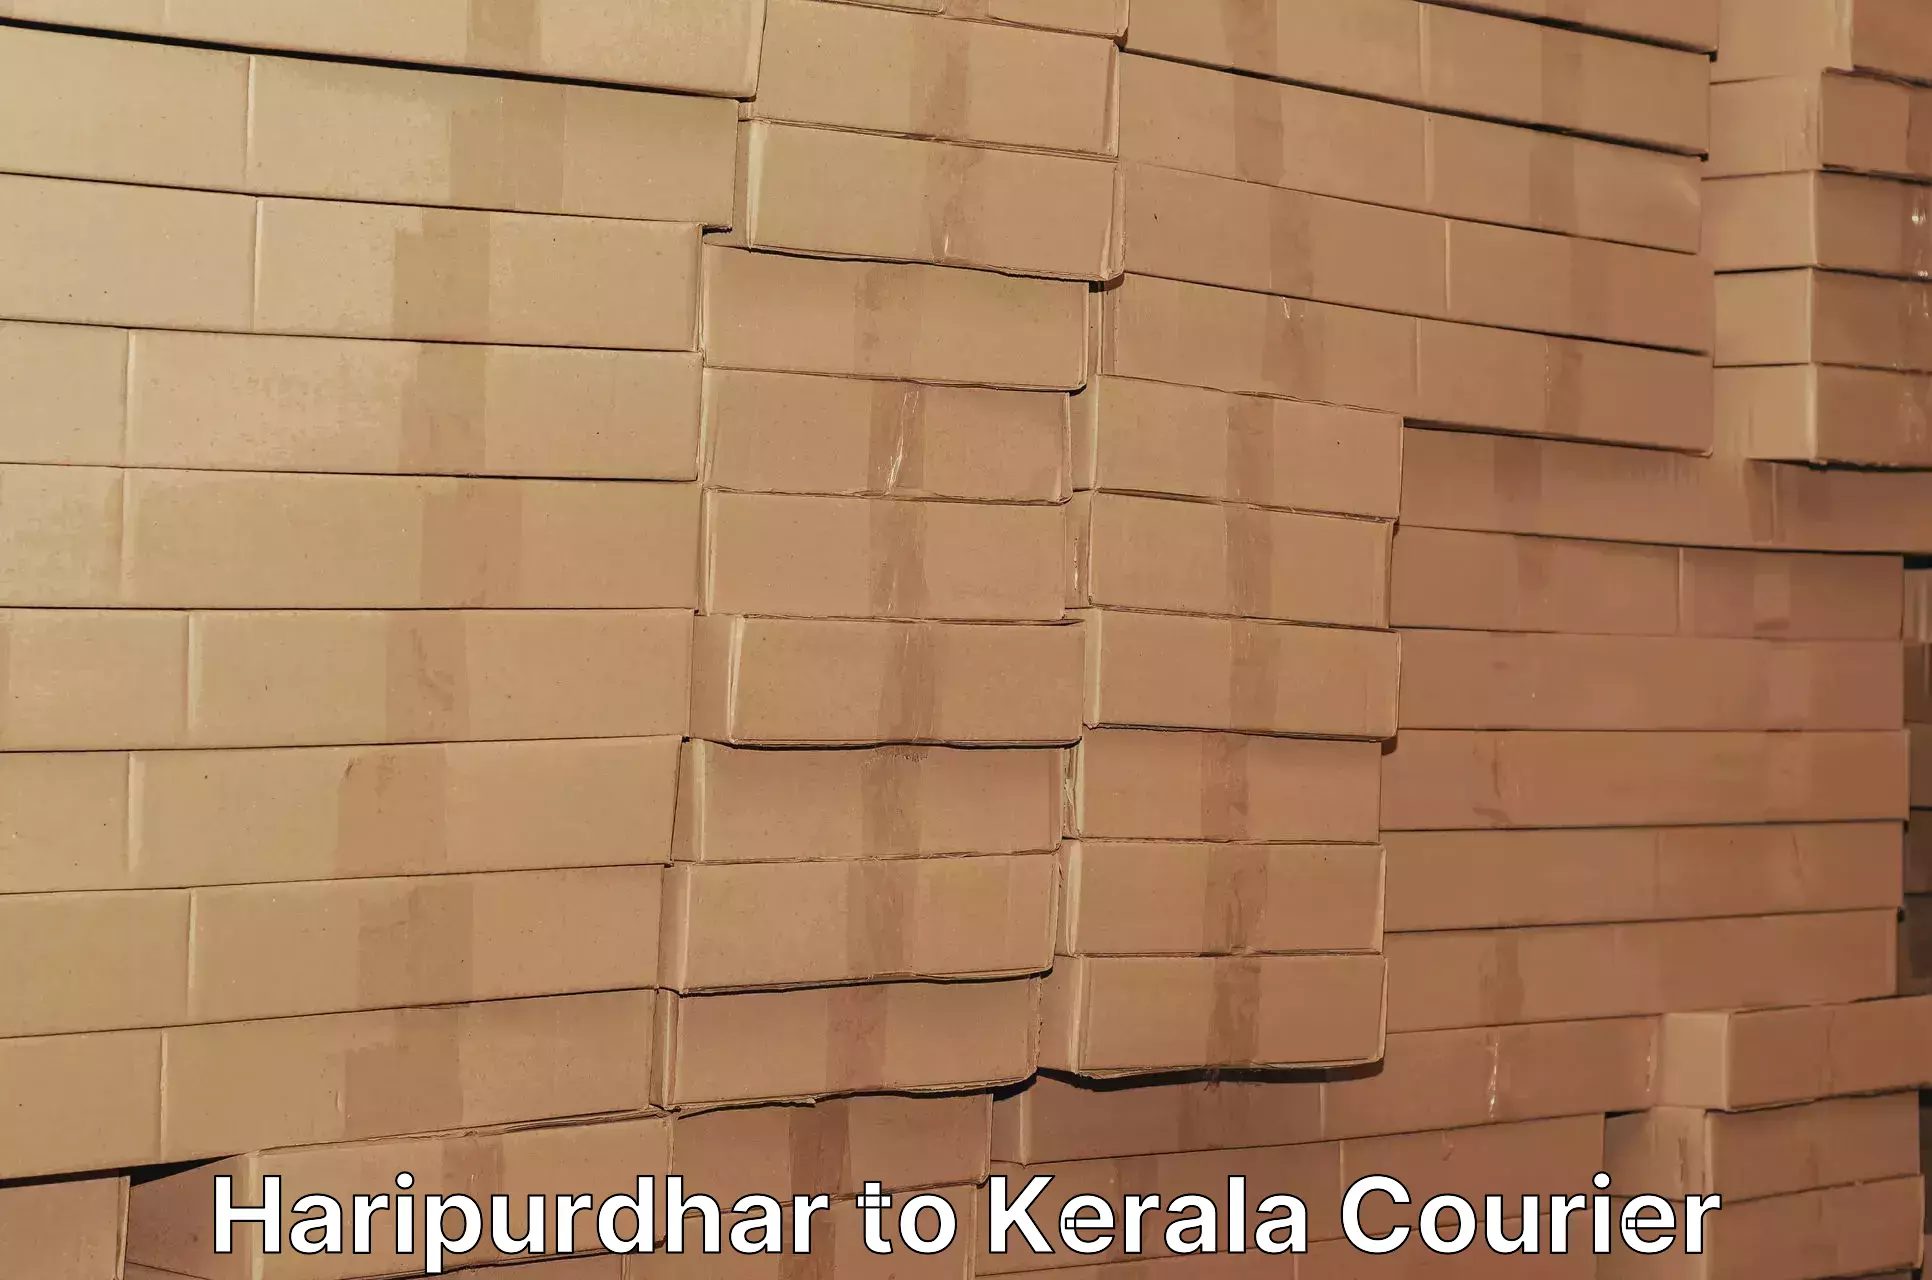 User-friendly courier app Haripurdhar to Vadakkencherry